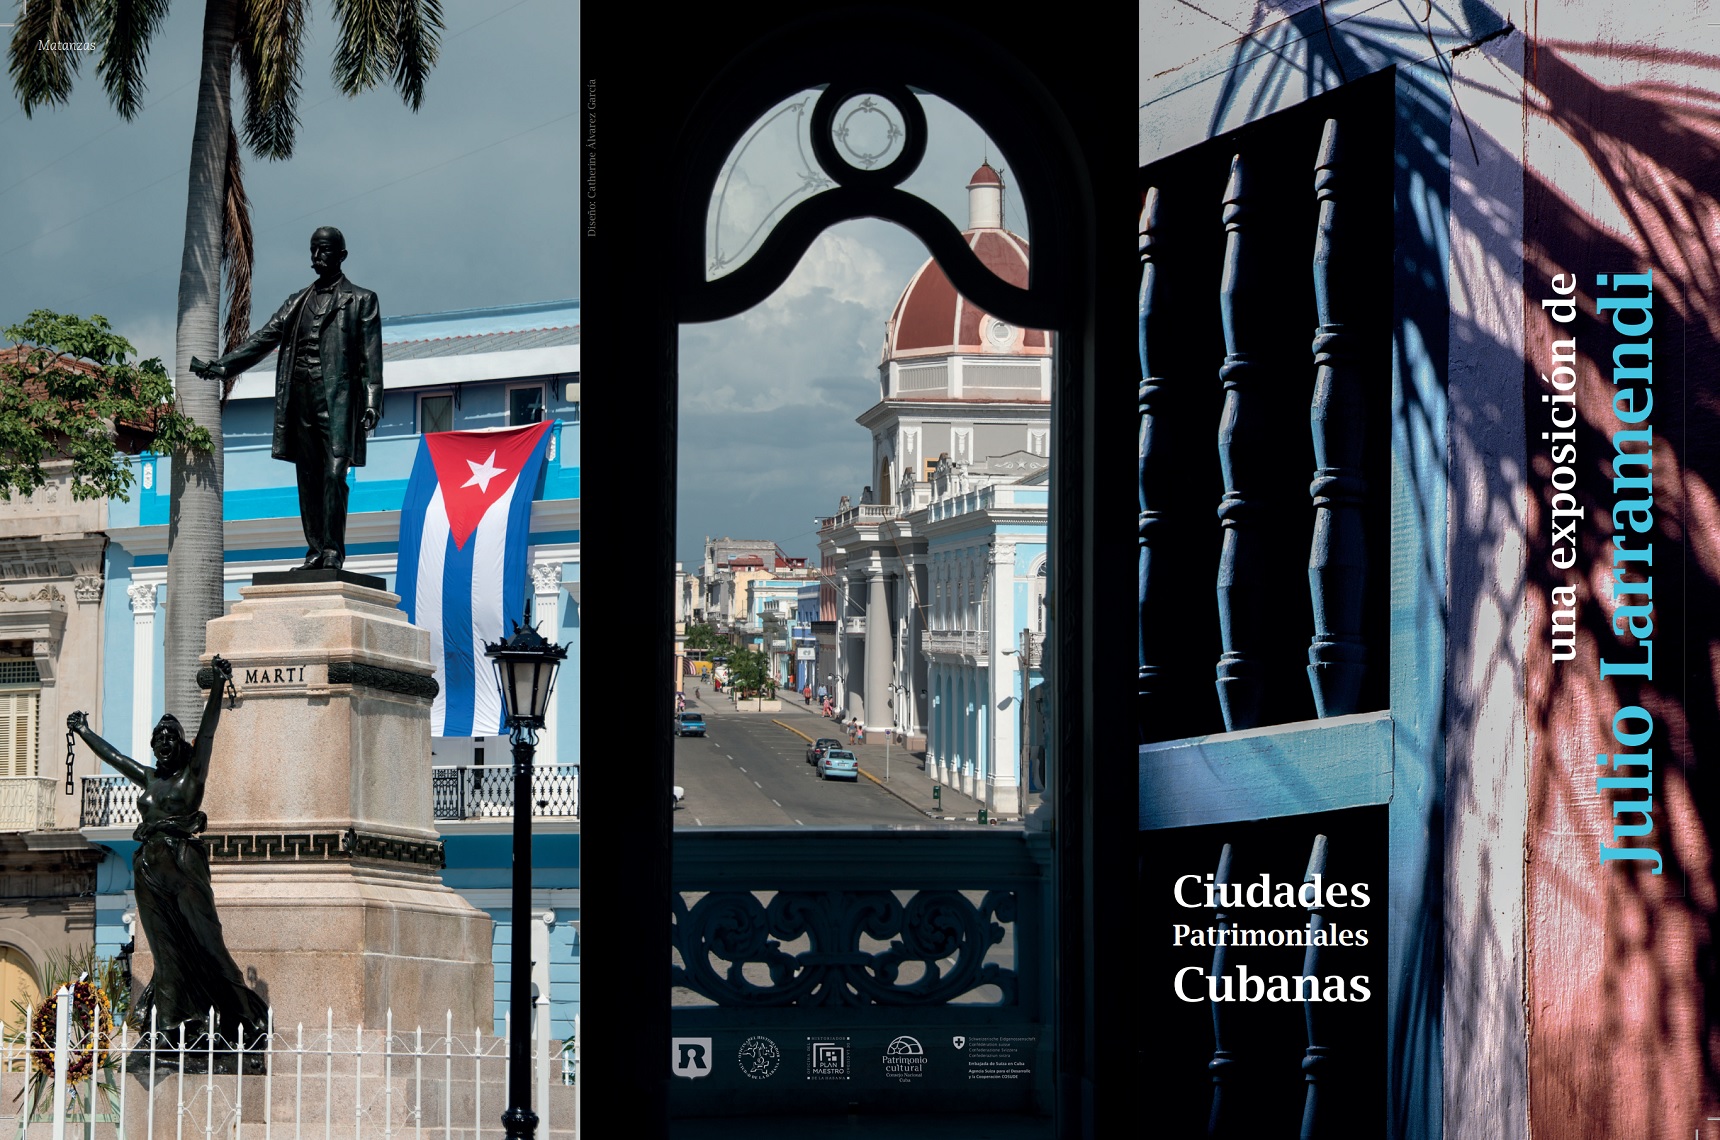 Heritage sites of Cuba